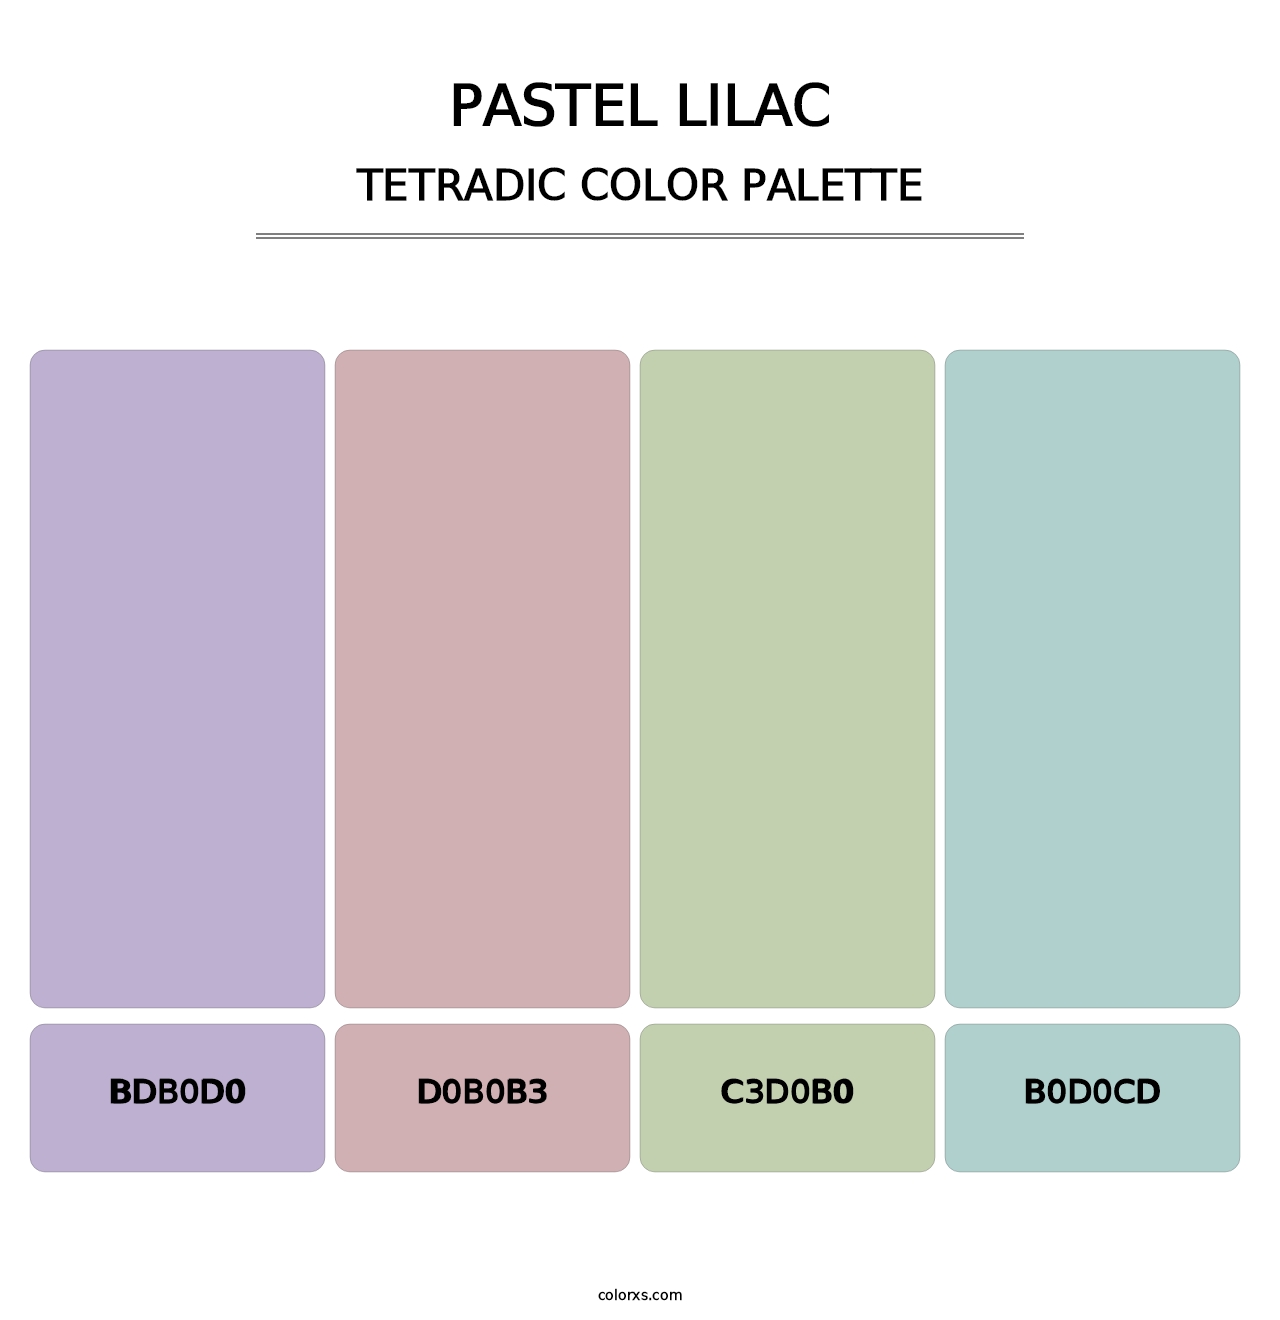 Pastel Lilac - Tetradic Color Palette